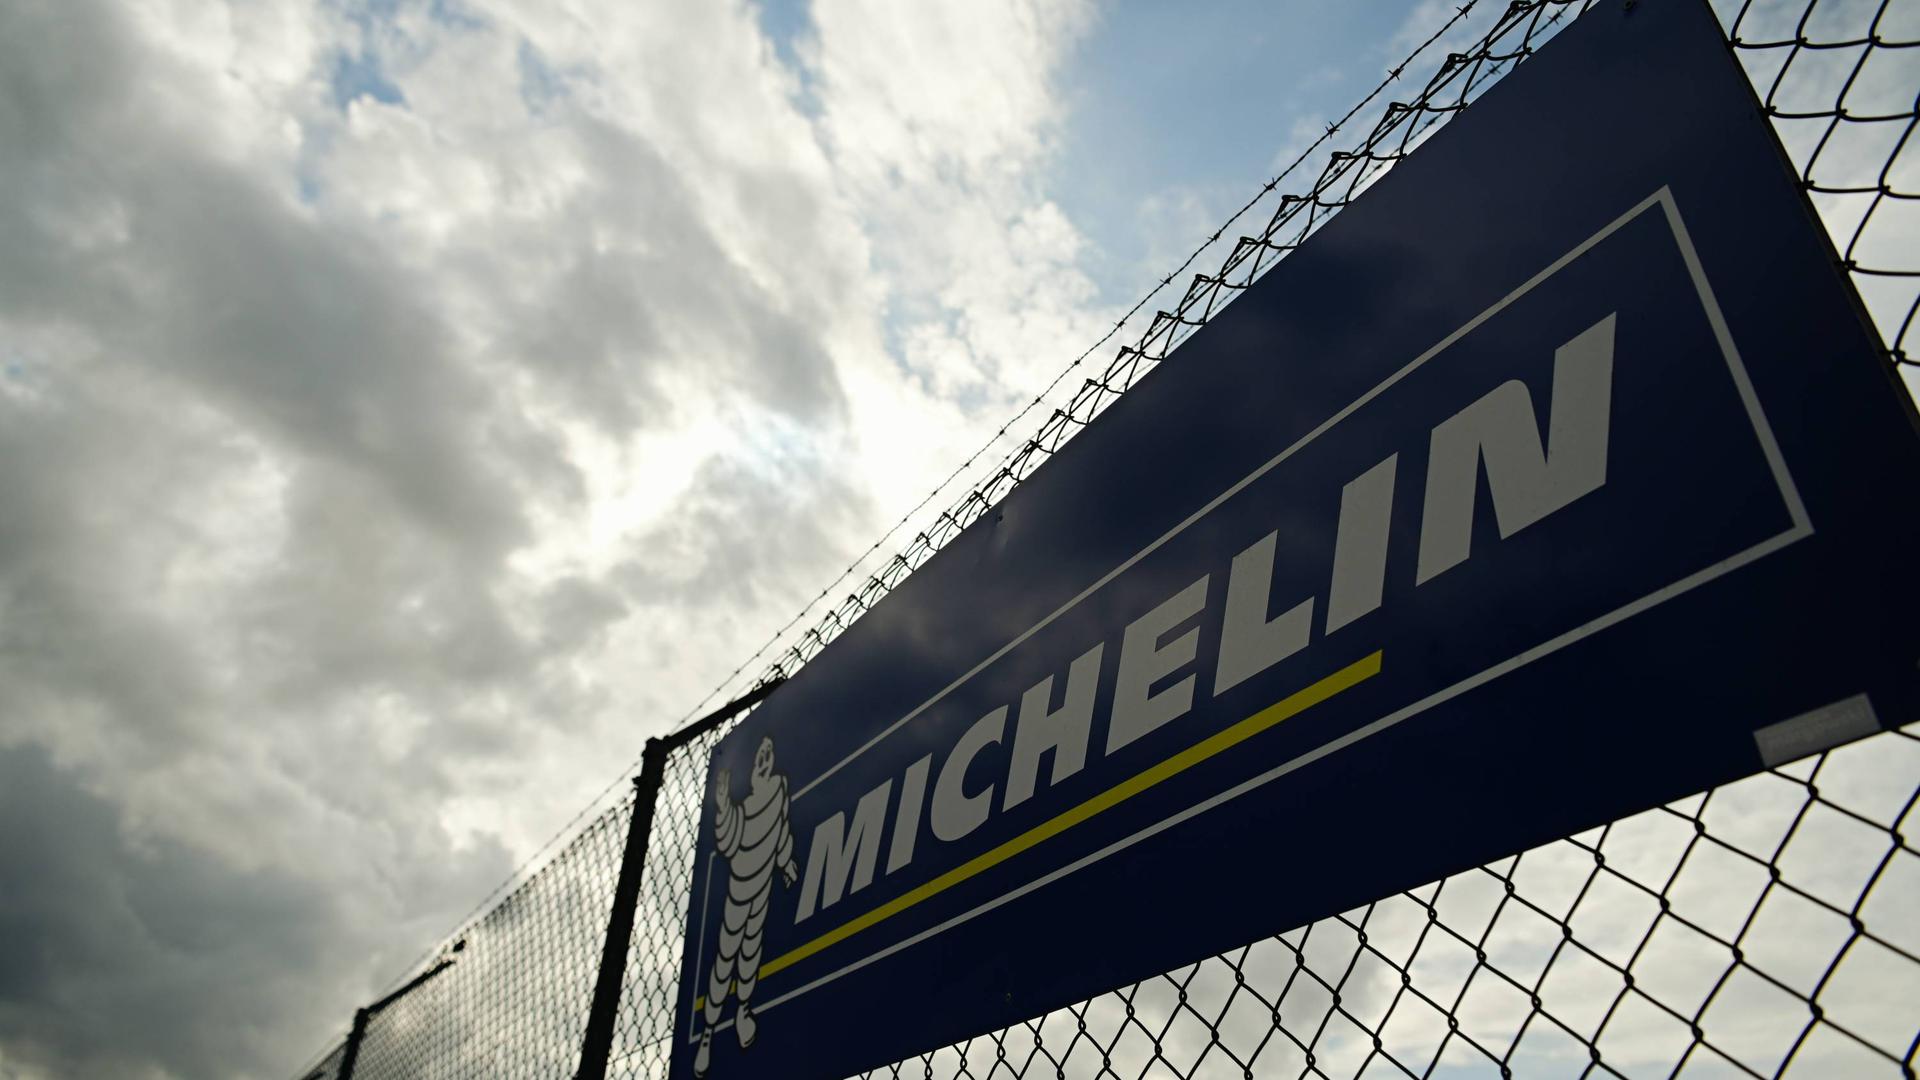 Der Reifenhersteller Michelin streitet mit Mitarbeitern um Steuerzahlungen. Ein Fall ist nun vor dem Arbeitsgericht Karlsruhe gelandet und könnte Auswirkungen auf die weiteren Fälle haben.